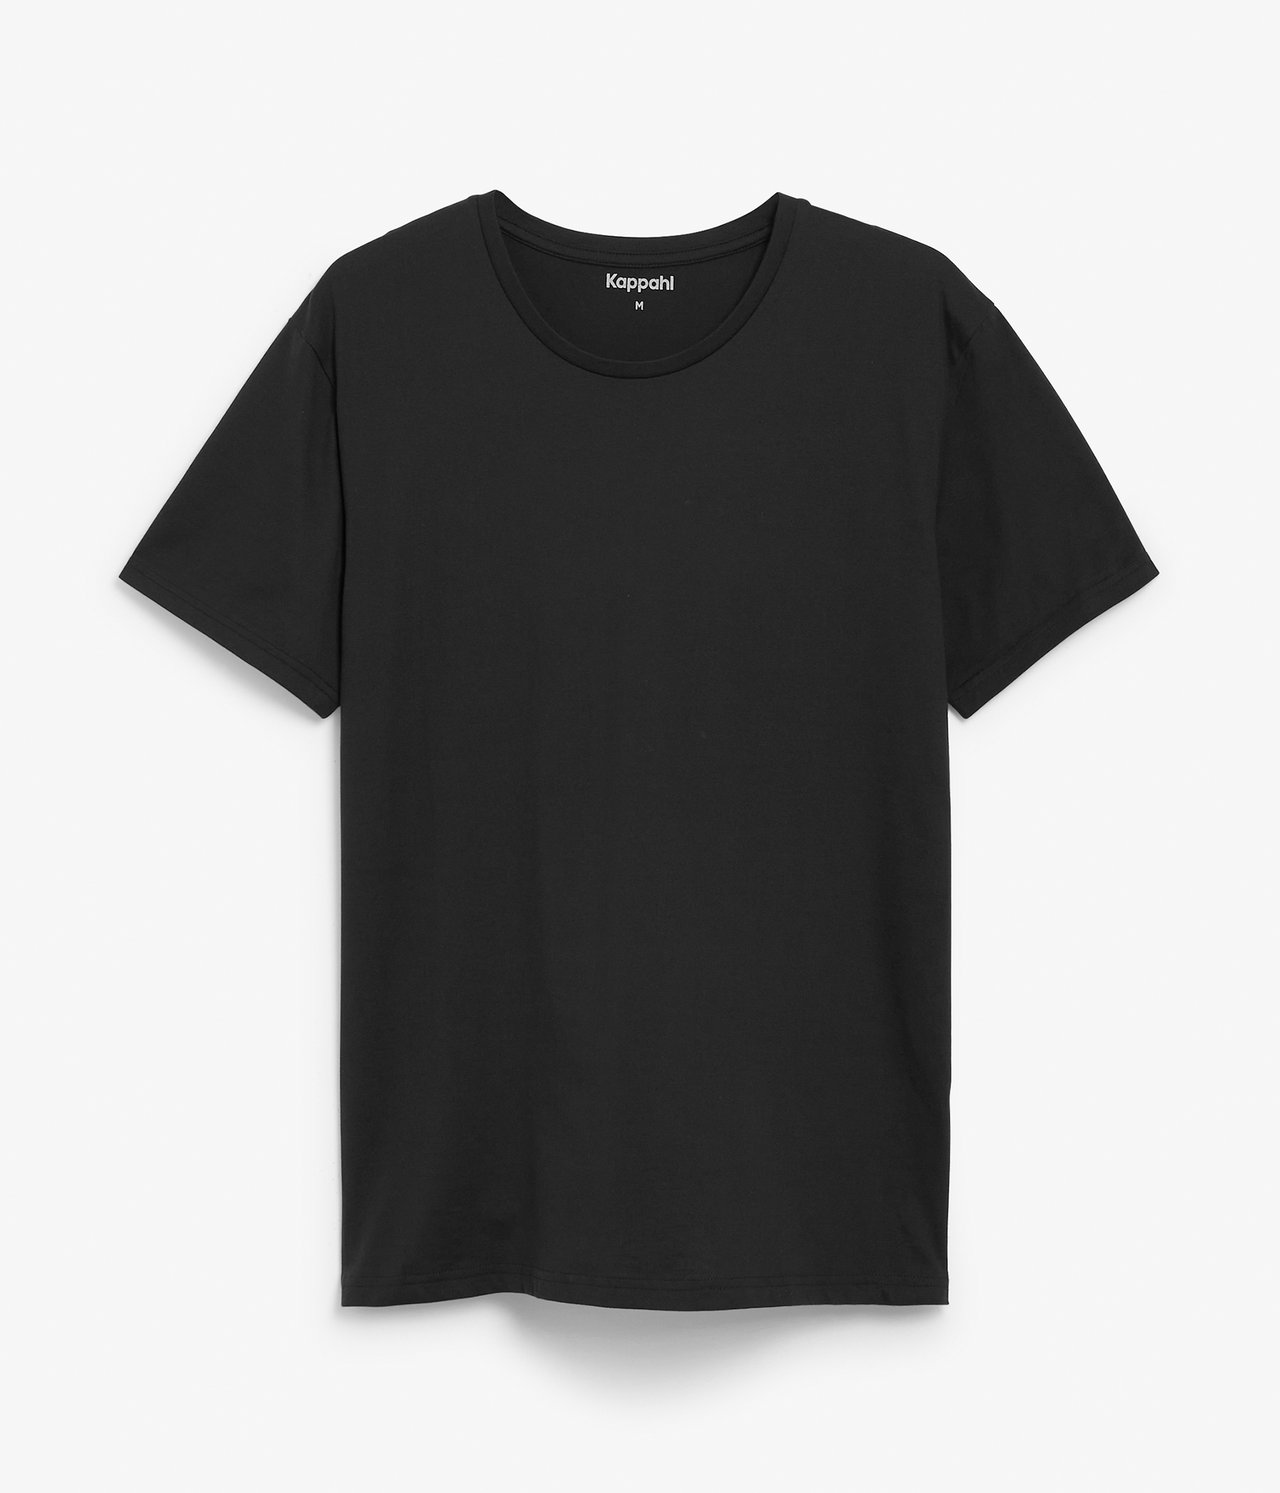 Pyöreäkauluksinen t-paita Musta - null - 6